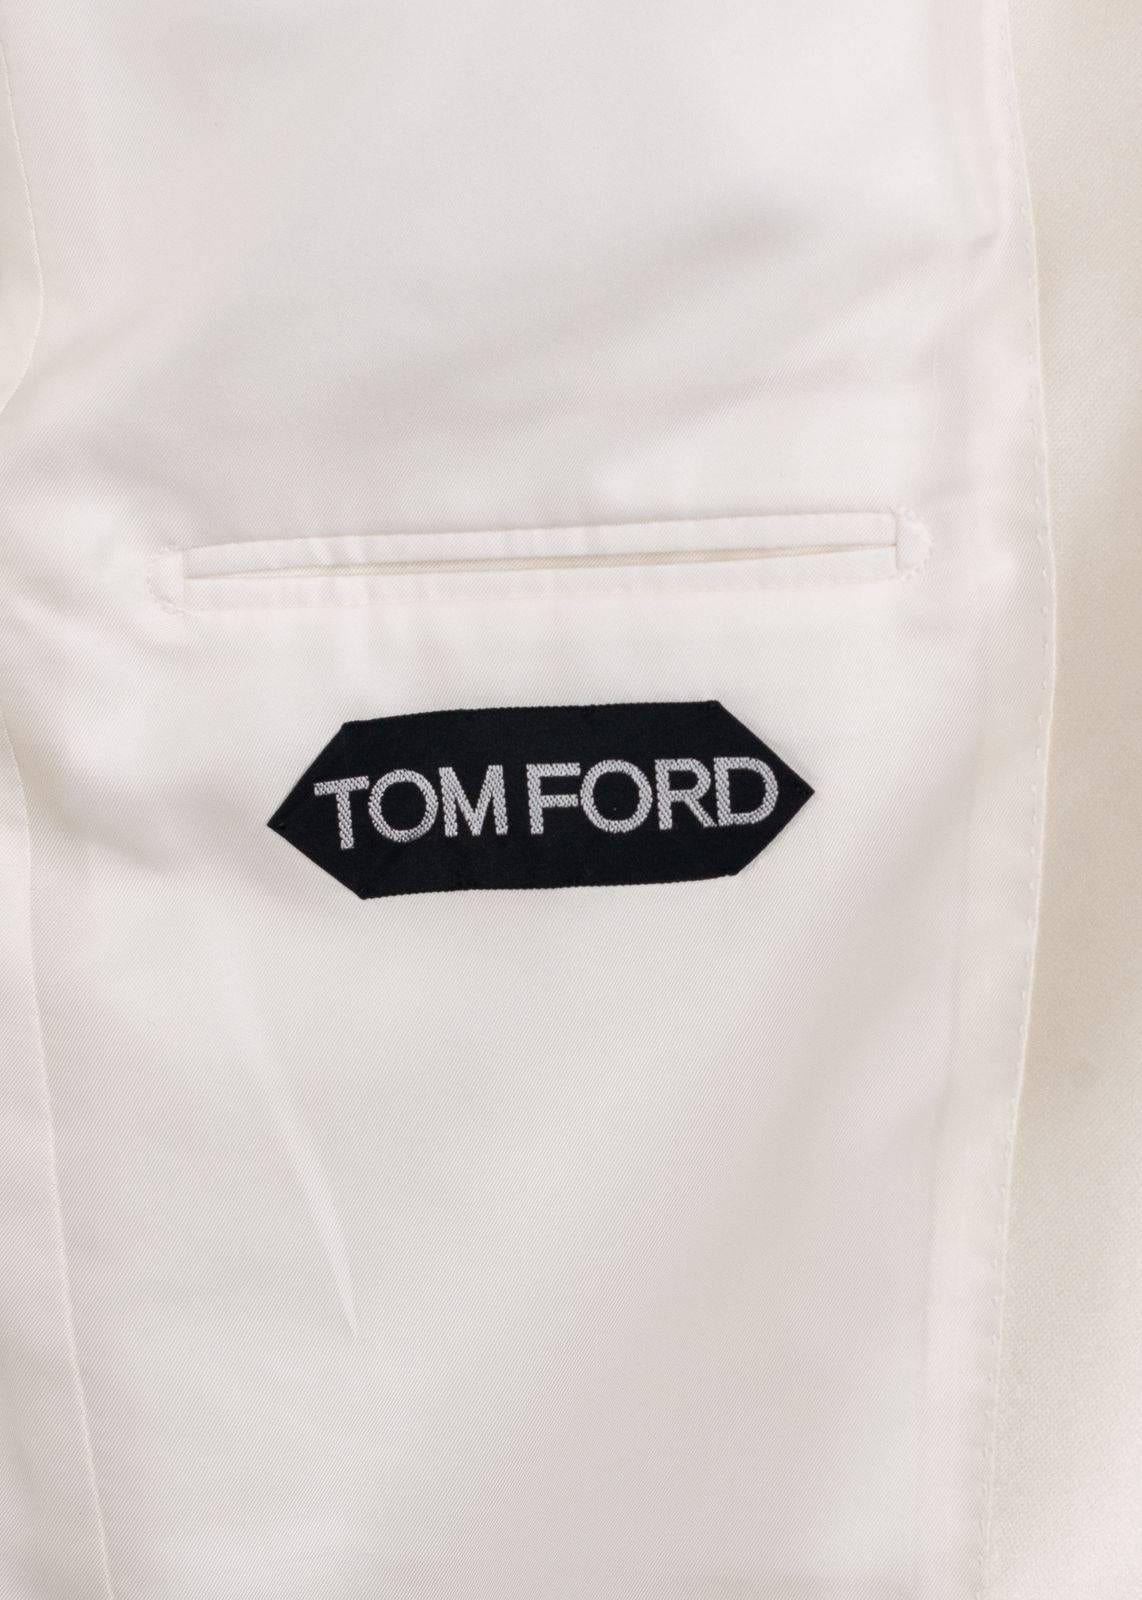 Beige Tom Ford Mens Leopard Grey Leopard Shelton Cocktail Jacket Size 52R/42R RTL$4990 For Sale